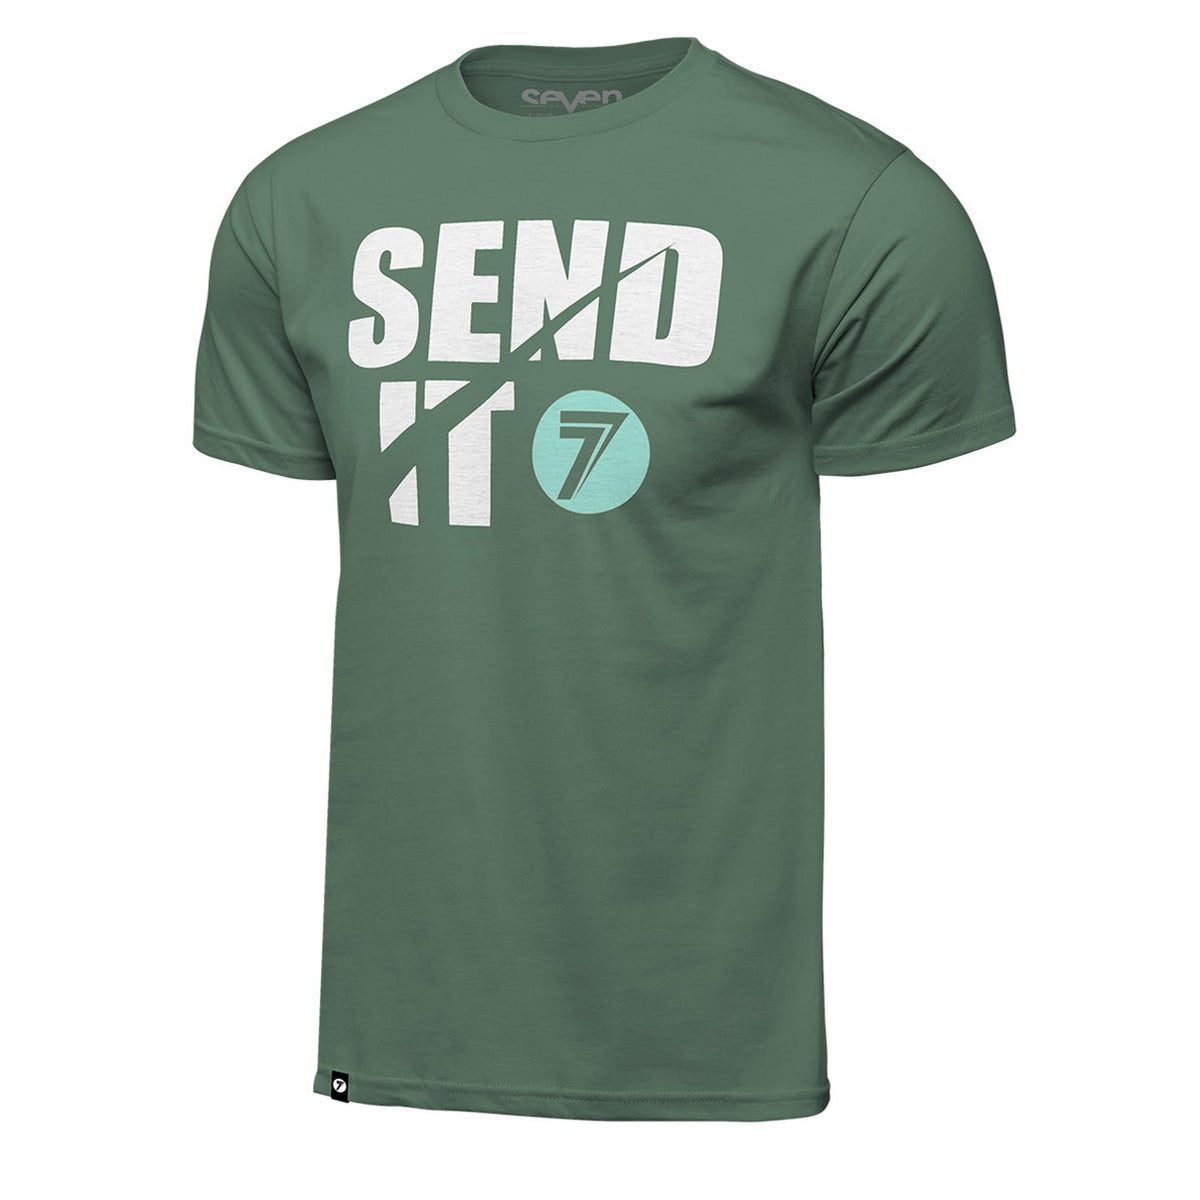 Seven Send-It Tee